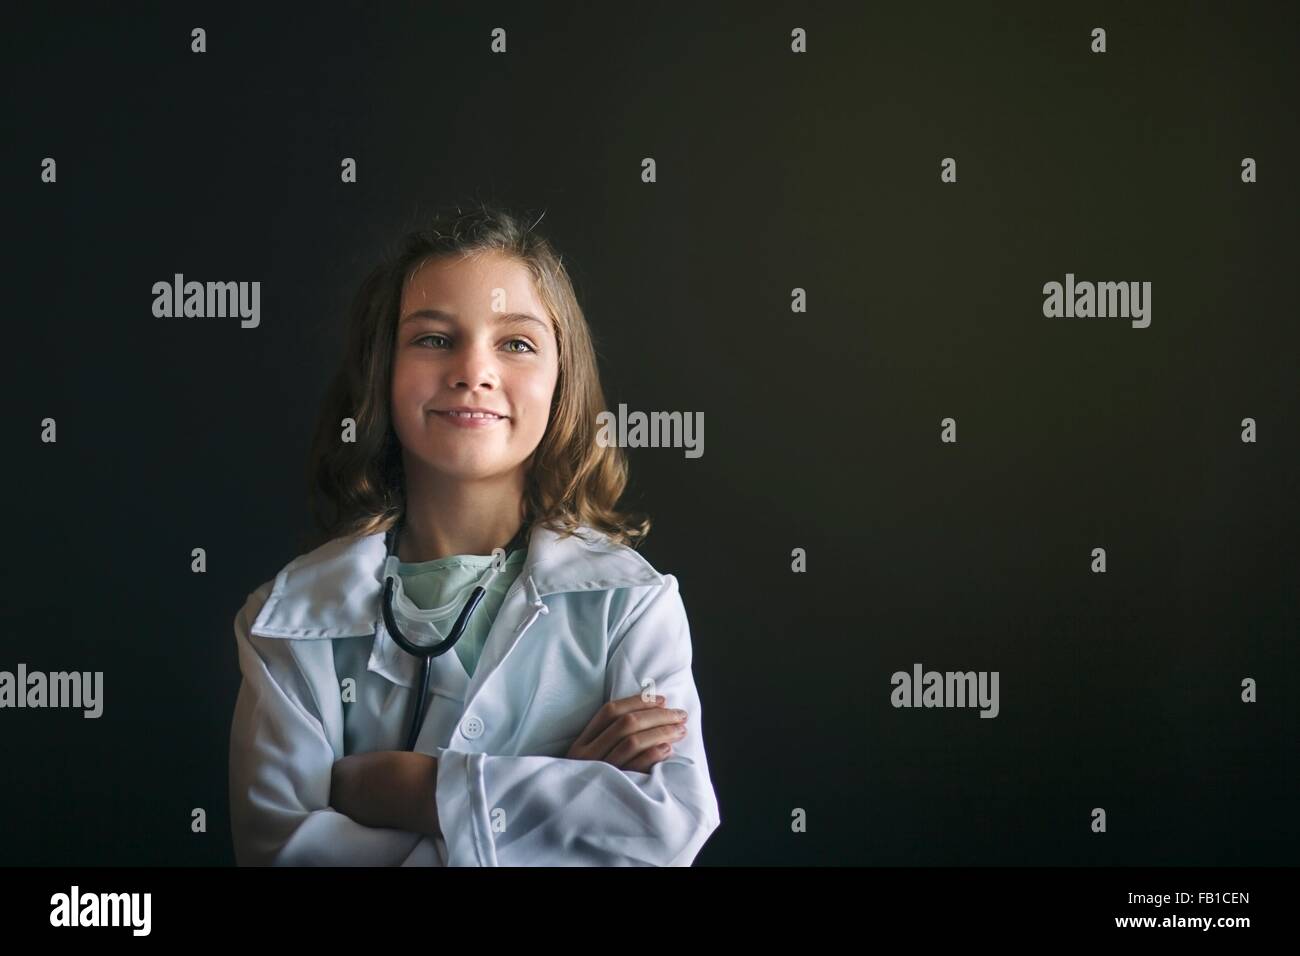 Ritratto di ragazza vestita come medico indossa uno stetoscopio, braccia incrociate che guarda lontano sorridente Foto Stock